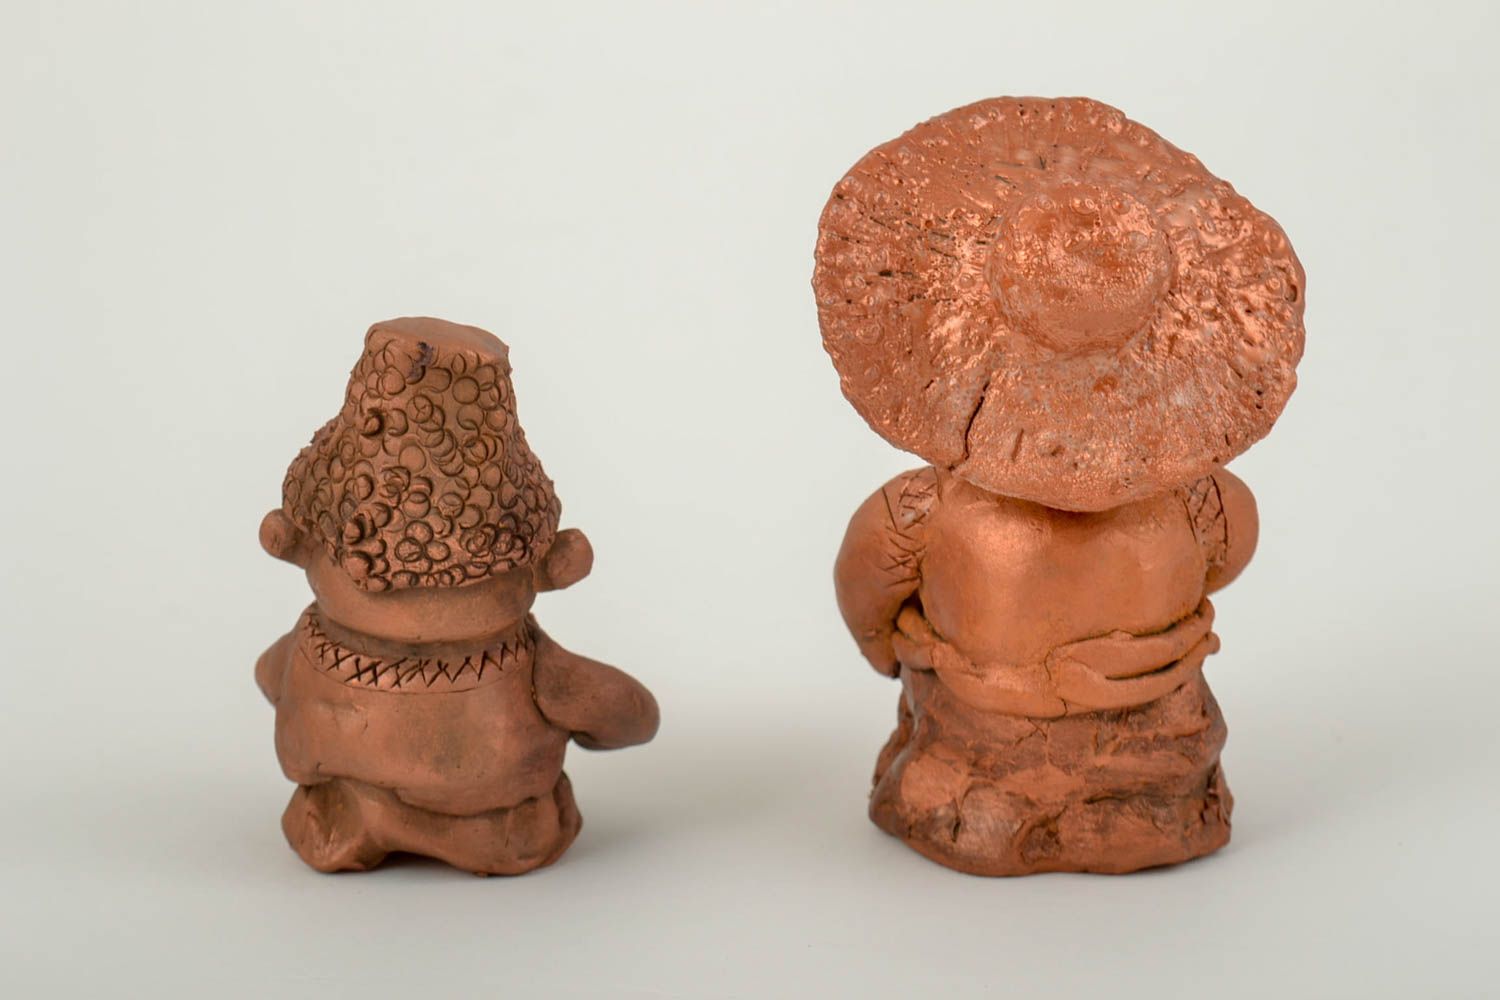 Ceramic figurines homemade home decor miniature figurines souvenir ideas photo 4